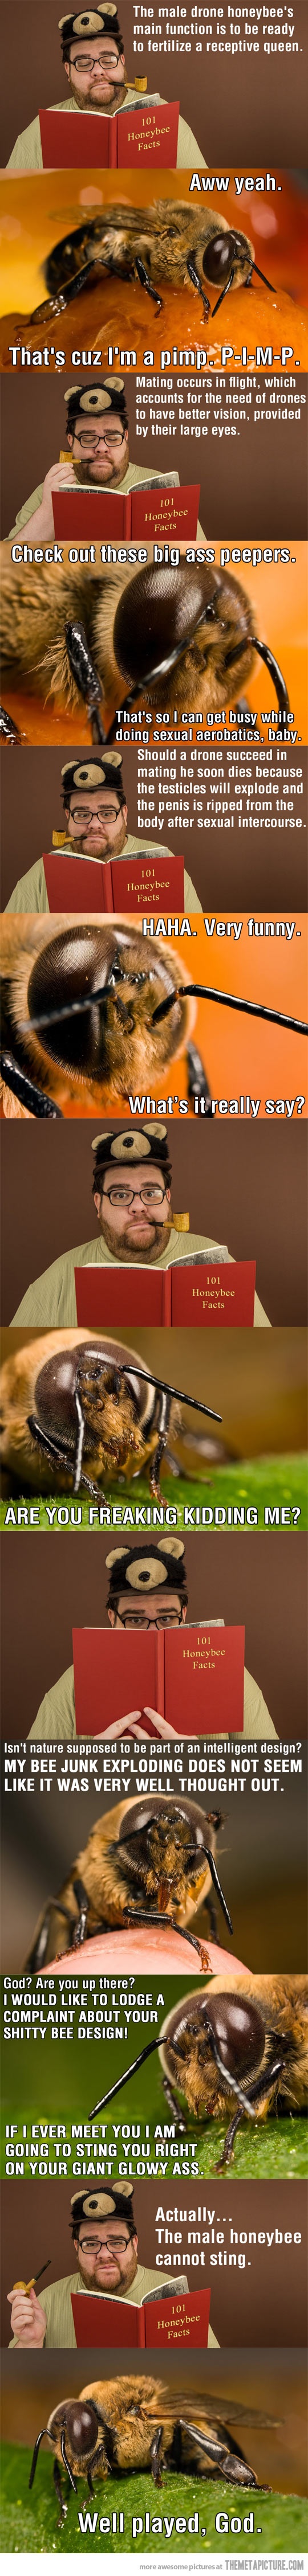 Poor honeybees...